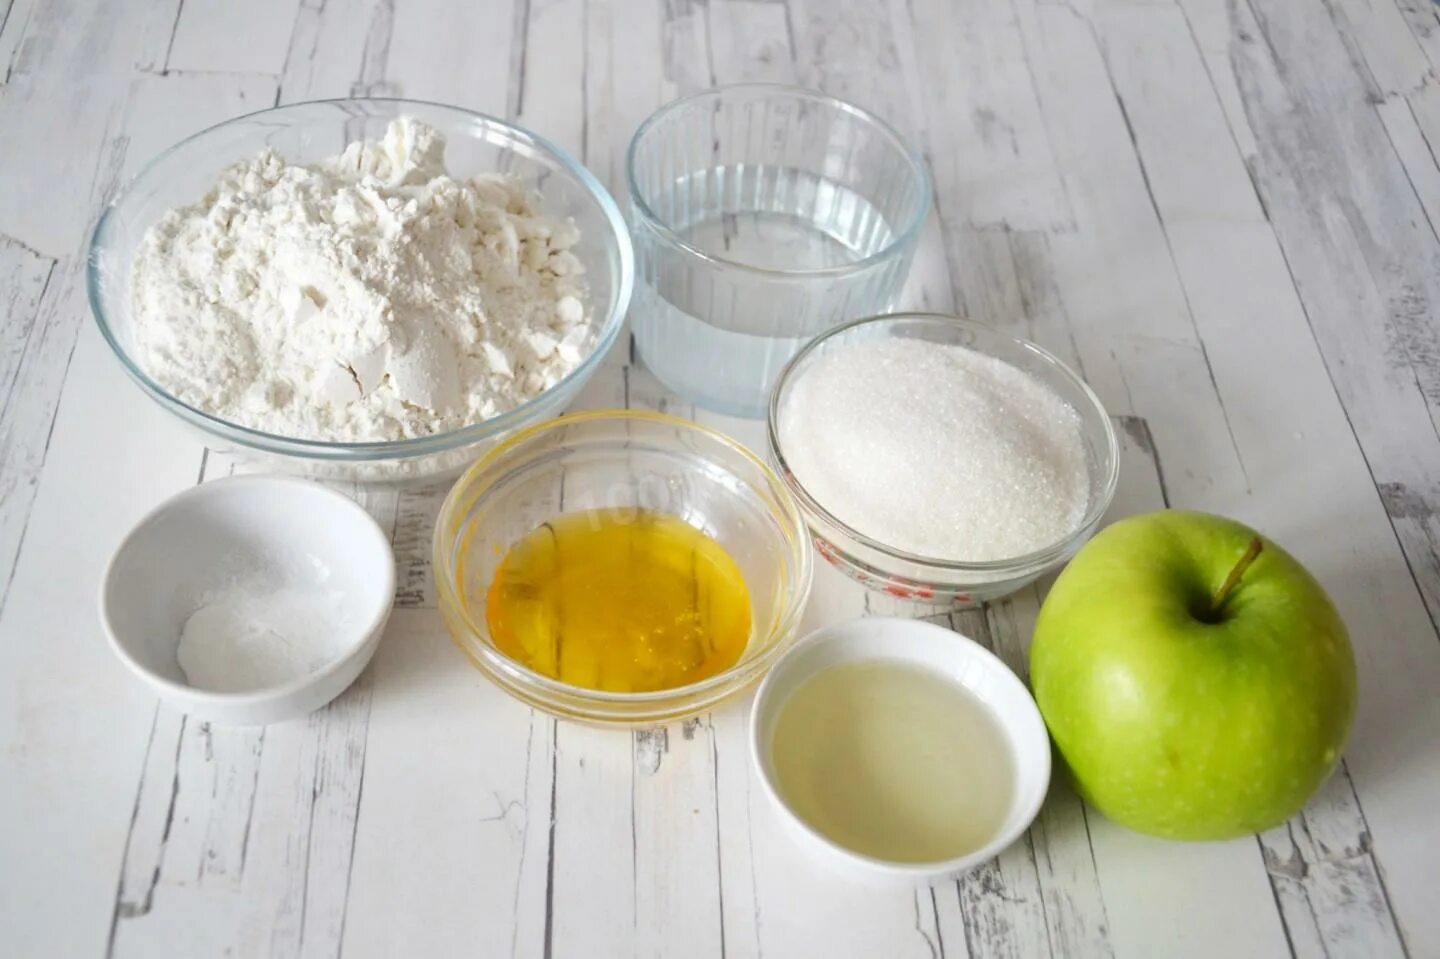 Пирог масло мука яйца сахар. Ингредиенты для яблочного пирога. Ингредиенты для шарлотки. Ингредиенты для пирога с яблоками. Продукты для приготовления шарлотки.